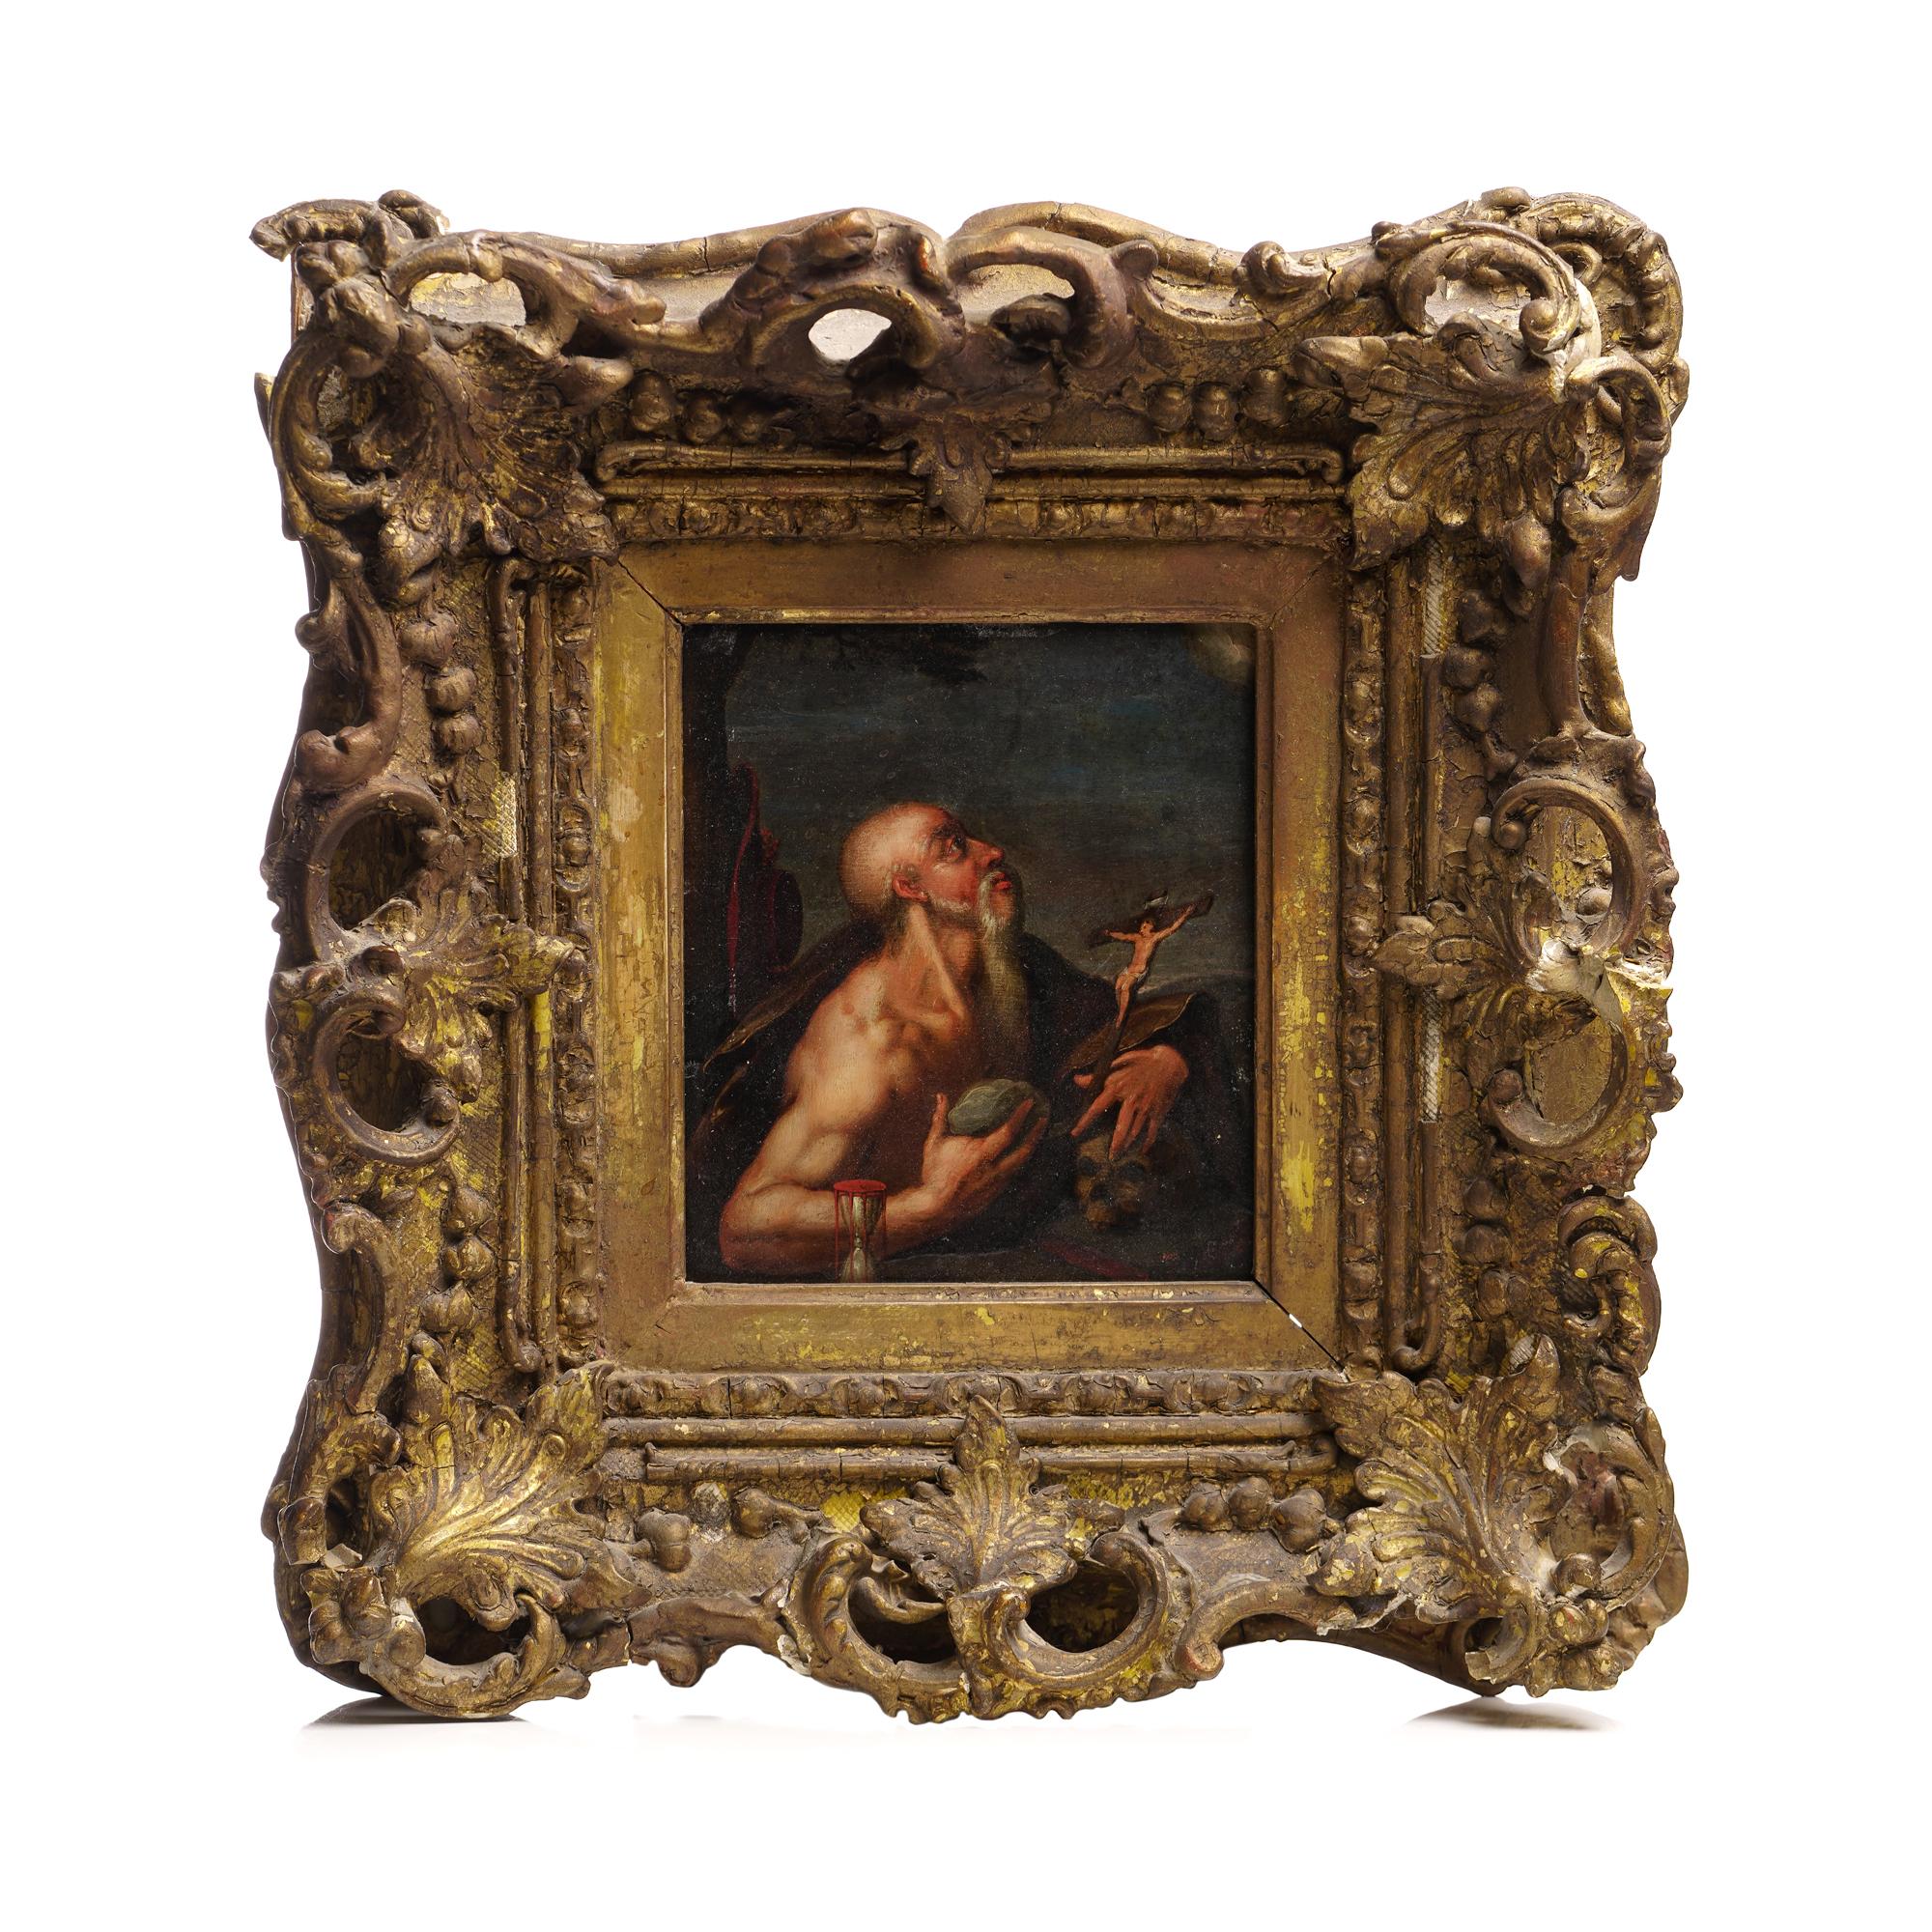 Dans cette ancienne peinture à l'huile sur cuivre du XVIIe siècle, nous voyons saint Jérôme, enfermé dans un cadre en bois orné de façon complexe. Jérôme joue le rôle d'un pénitent, profondément plongé dans la méditation et fixant un crucifix. Un